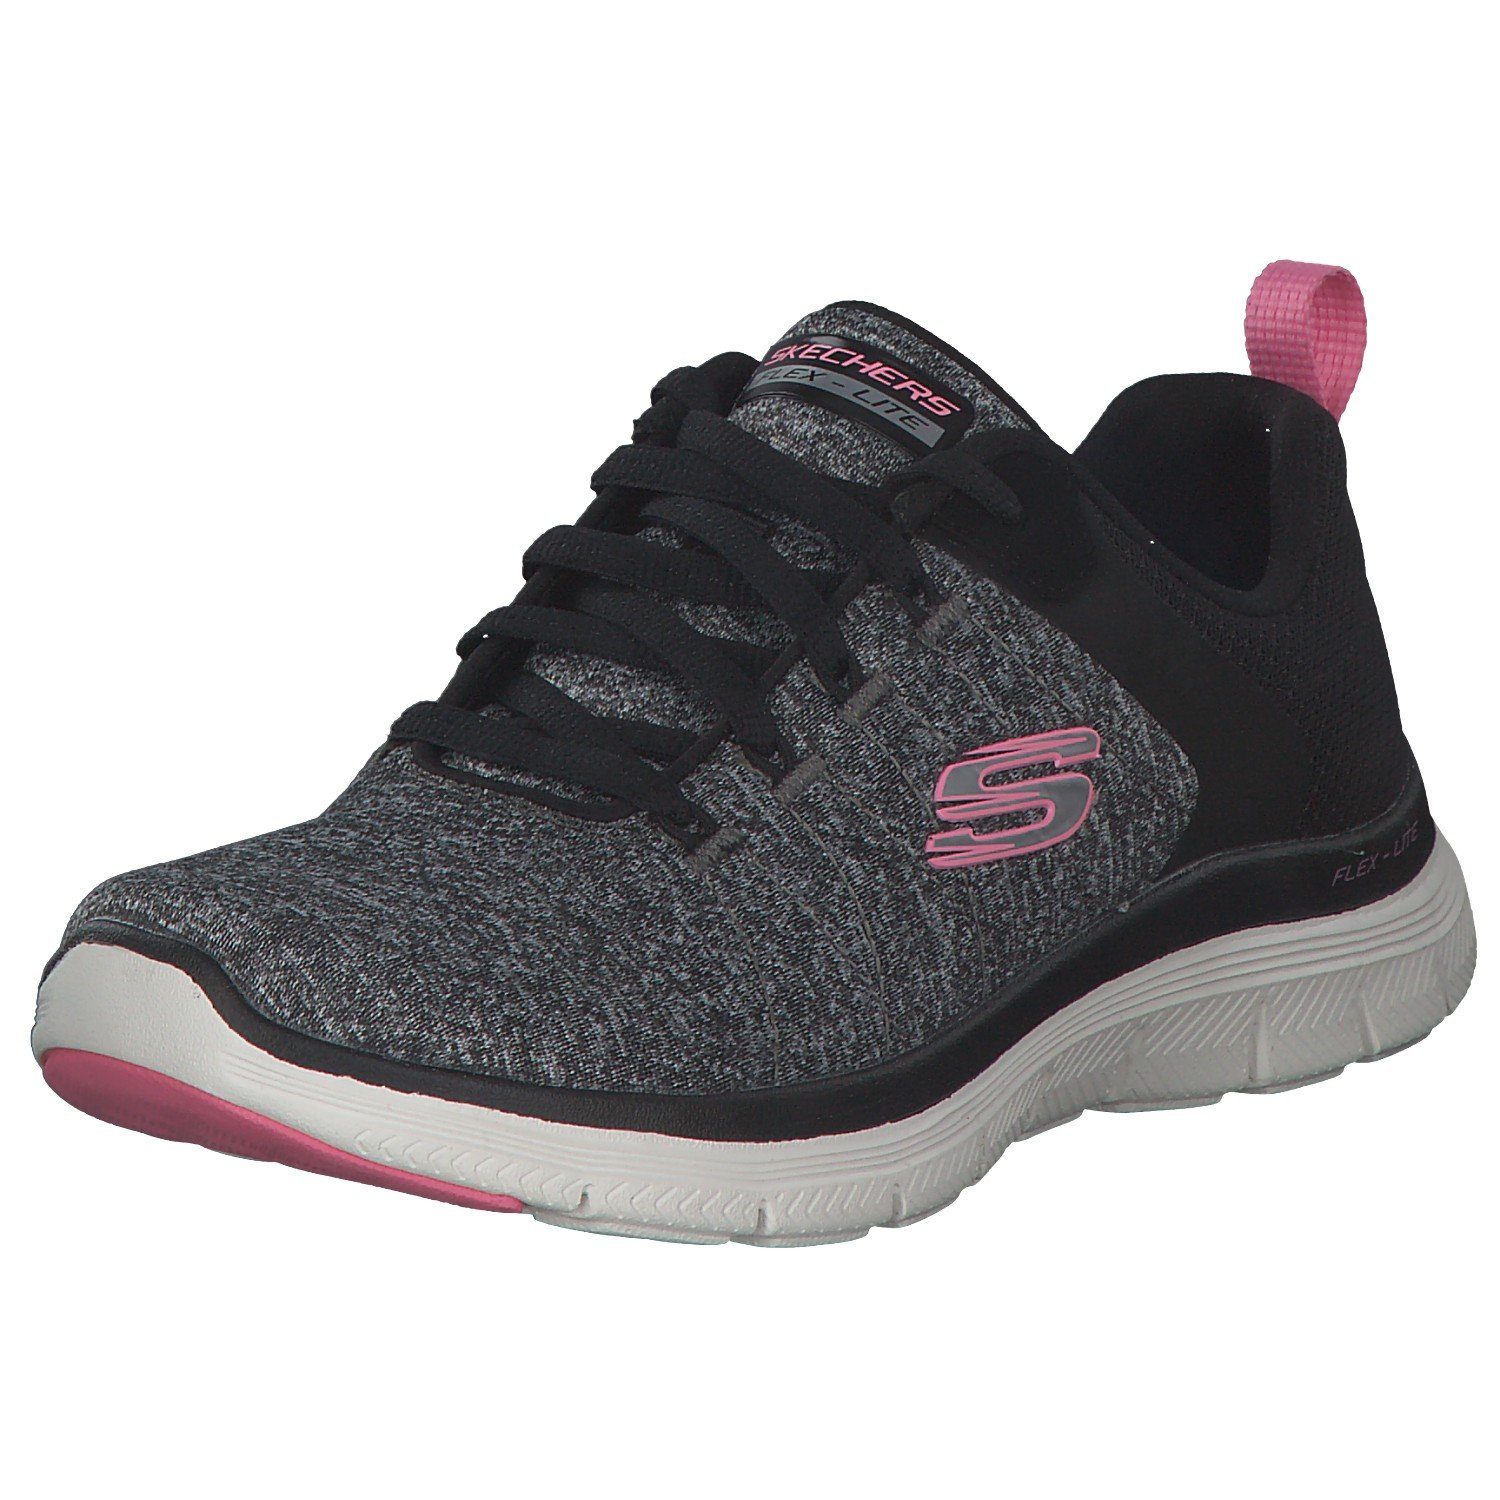 Skechers Skechers Flex Appeal 4.0 149307 Sneaker black/pink (20202592)